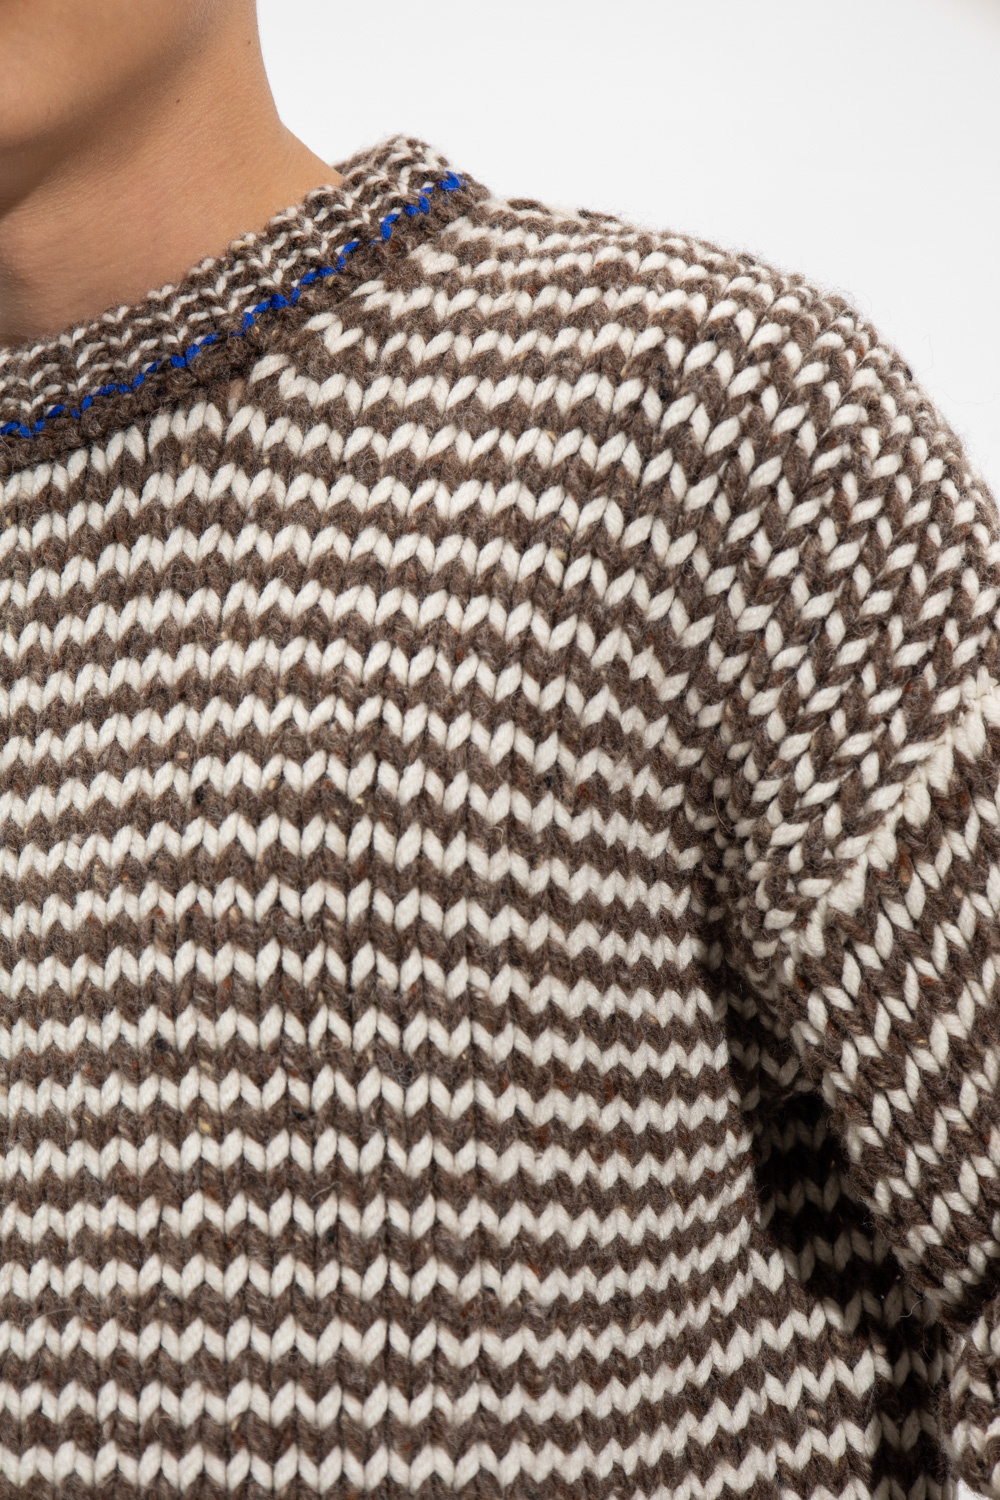 bottega clutch Veneta Wool sweater